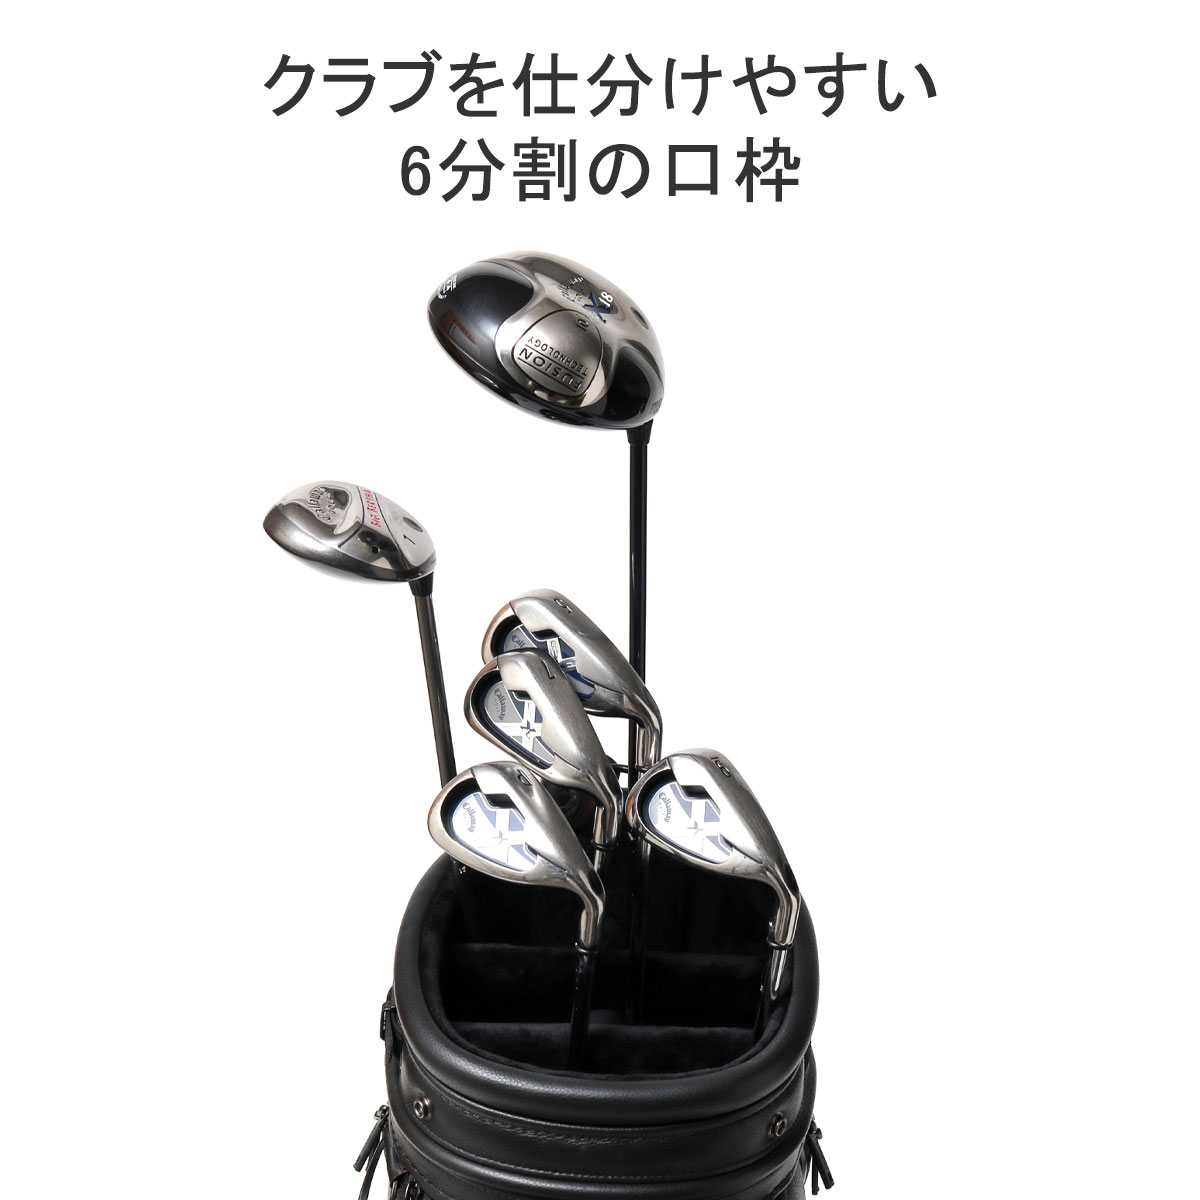 最大27%☆6/6限定 日本正規品 ブリーフィング ゴルフ キャディバッグ 